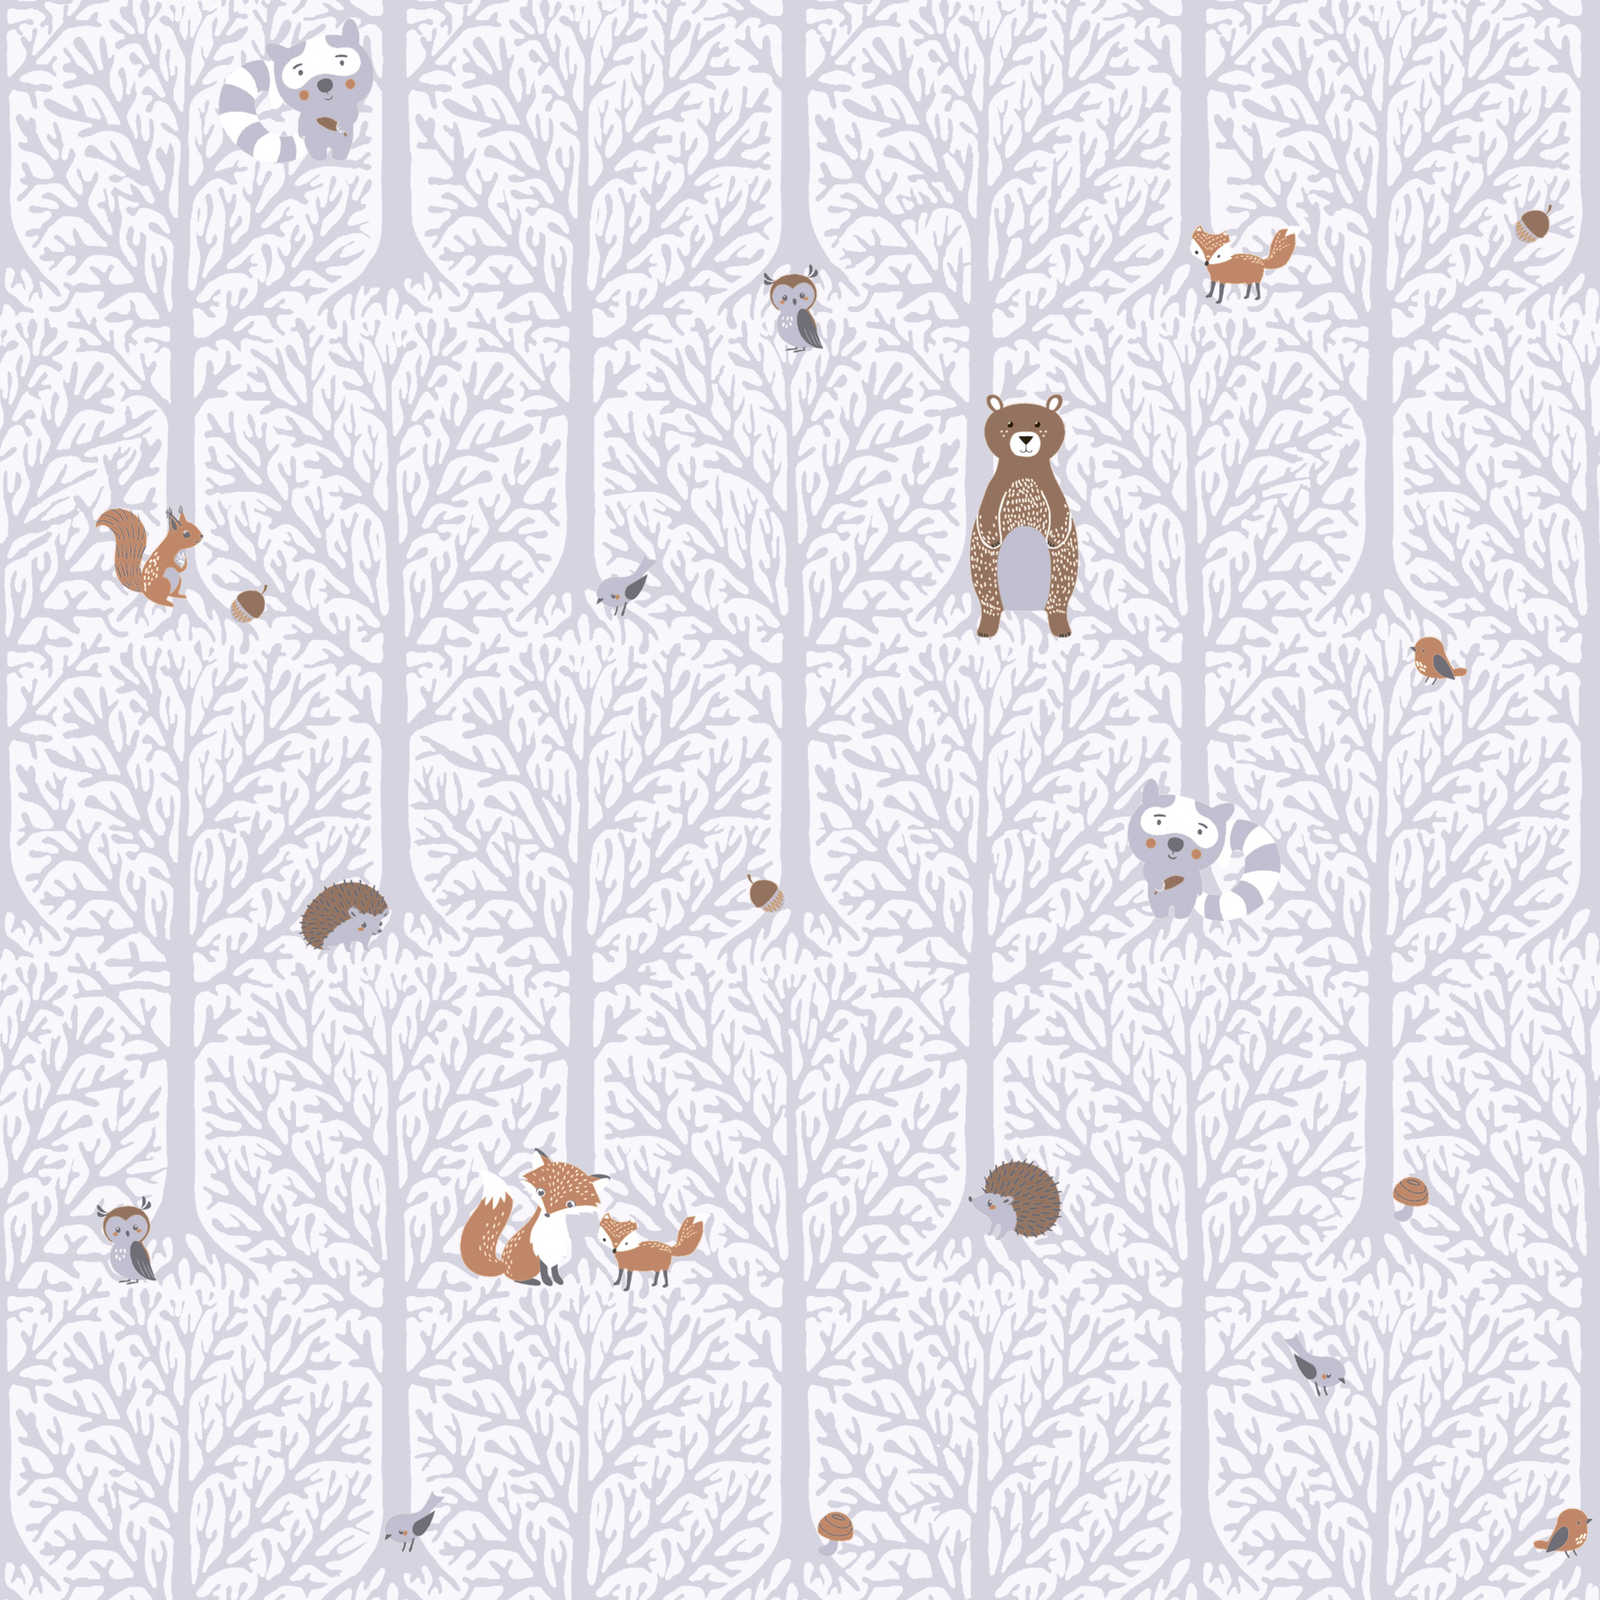         Nursery wallpaper girls forest animals - grey, white, brown
    